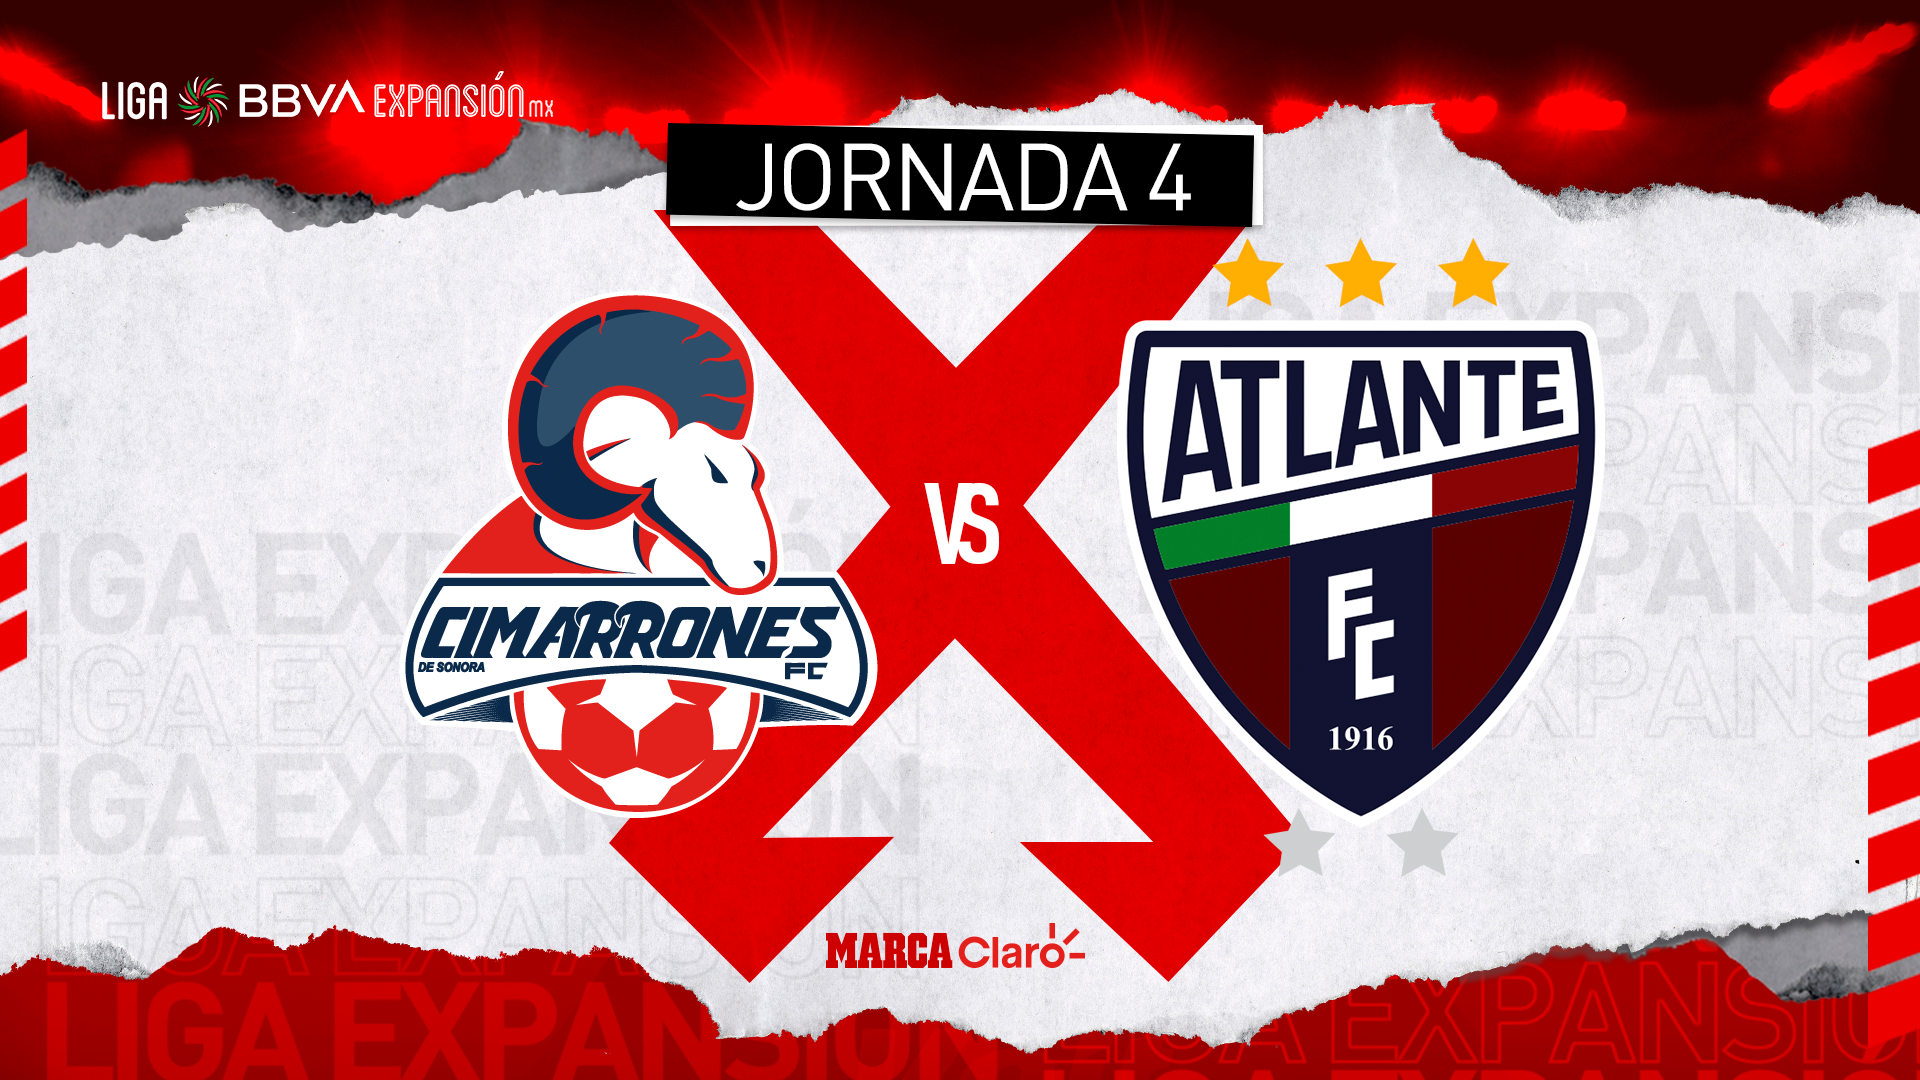 Cimarrones vs Atlante, en vivo y online la transmisión del partido de la Liga Expansión MX